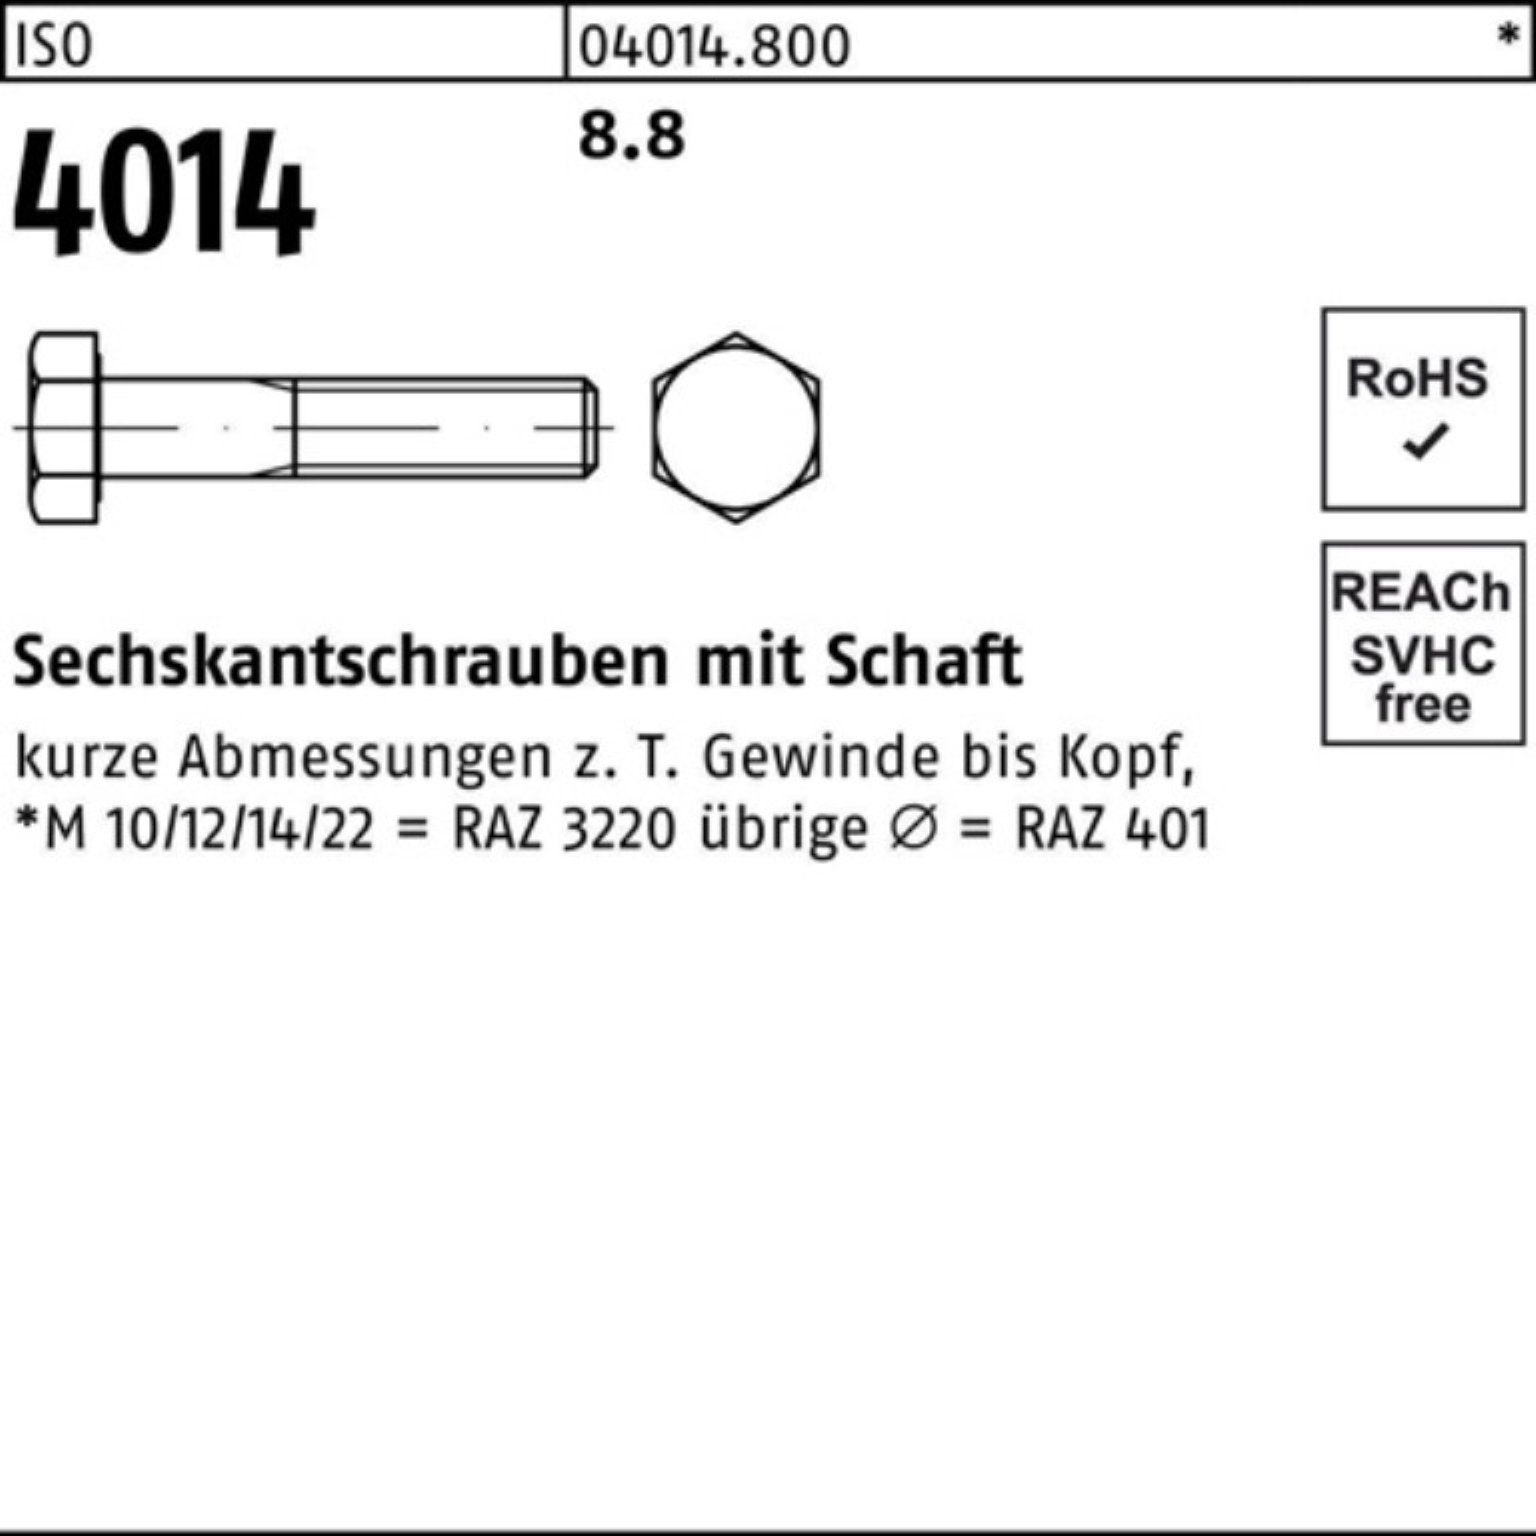 Sechskantschraube ISO Bufab ISO 220 Sechskantschraube Schaft M36x 4014 1 100er 8.8 Pack Stück